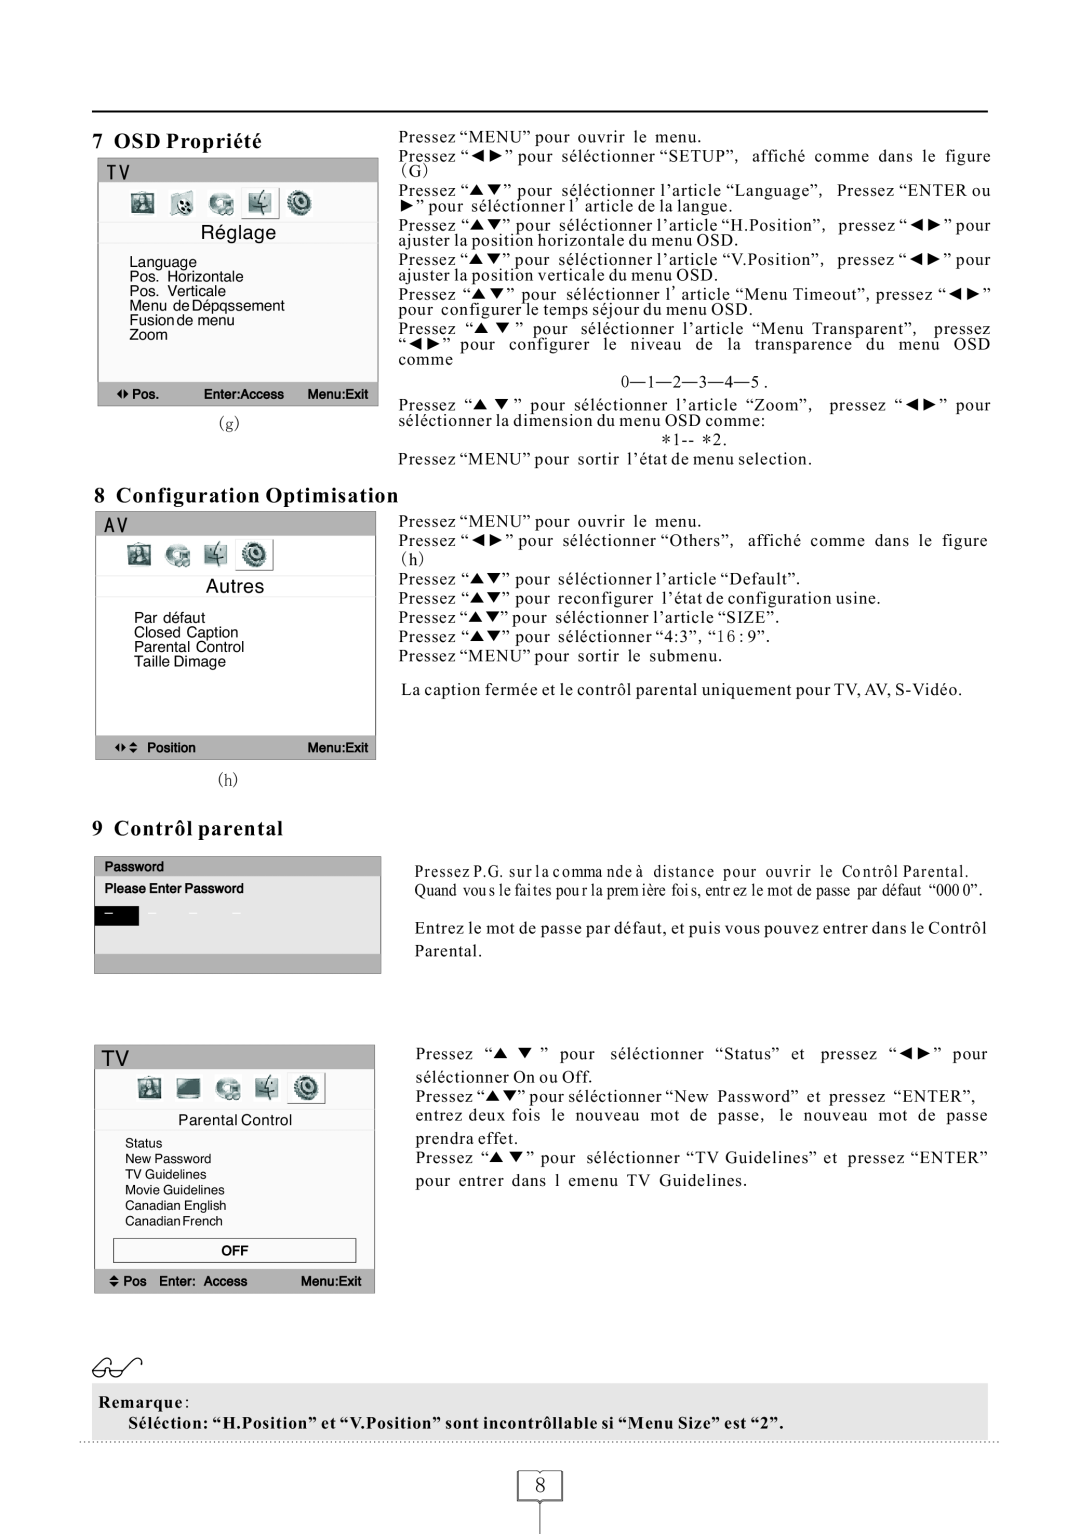 Curtis LCDVD152 manual OSD Propriété, Configuration Optimisation, Contrôl parental, Réglage, Autres, Remarque 